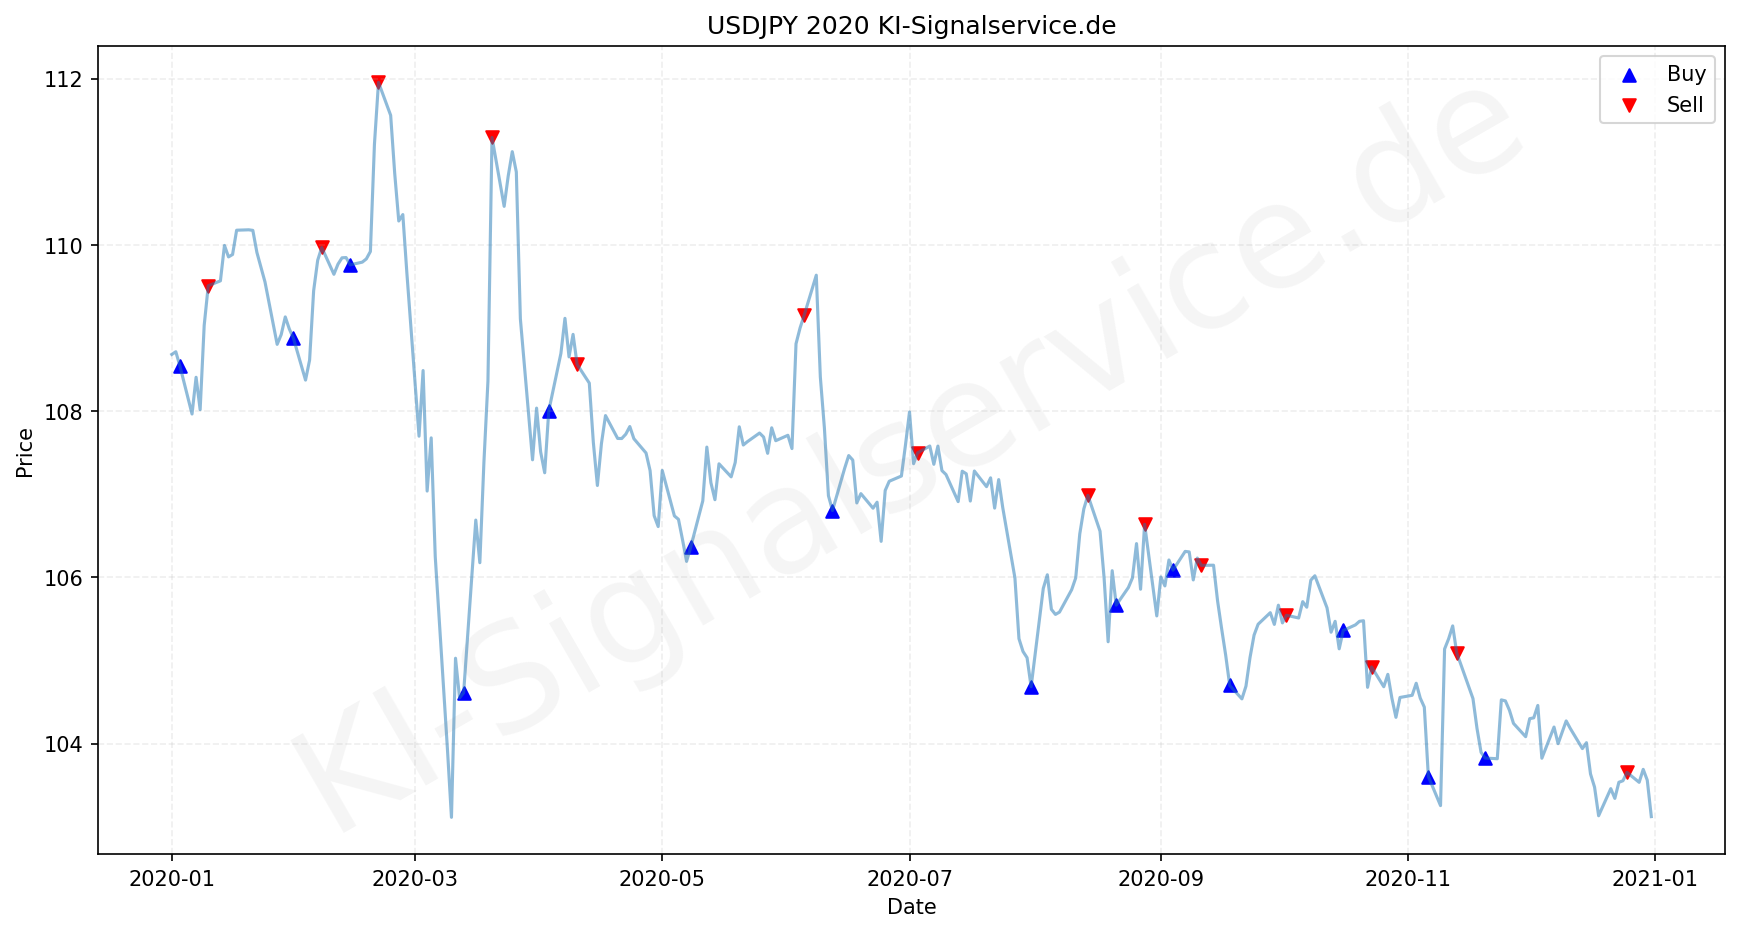 USDJPY Chart - KI Tradingsignale 2020